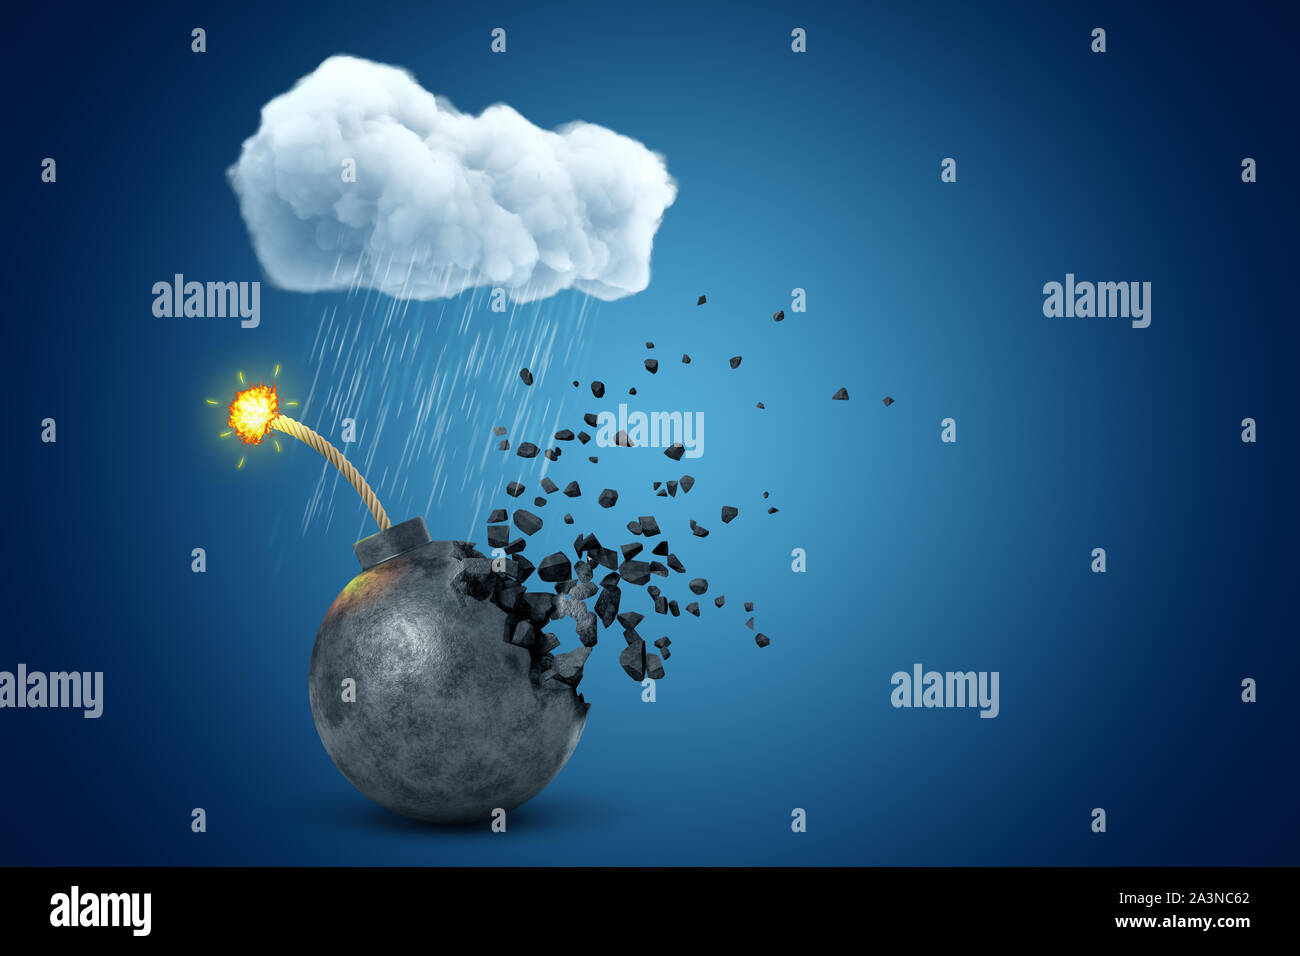 Le rendu 3D de ballon noir bombe avec fusible, brûlant de se désintégrer en morceaux sous les nuages de pluie sur fond bleu. Banque D'Images